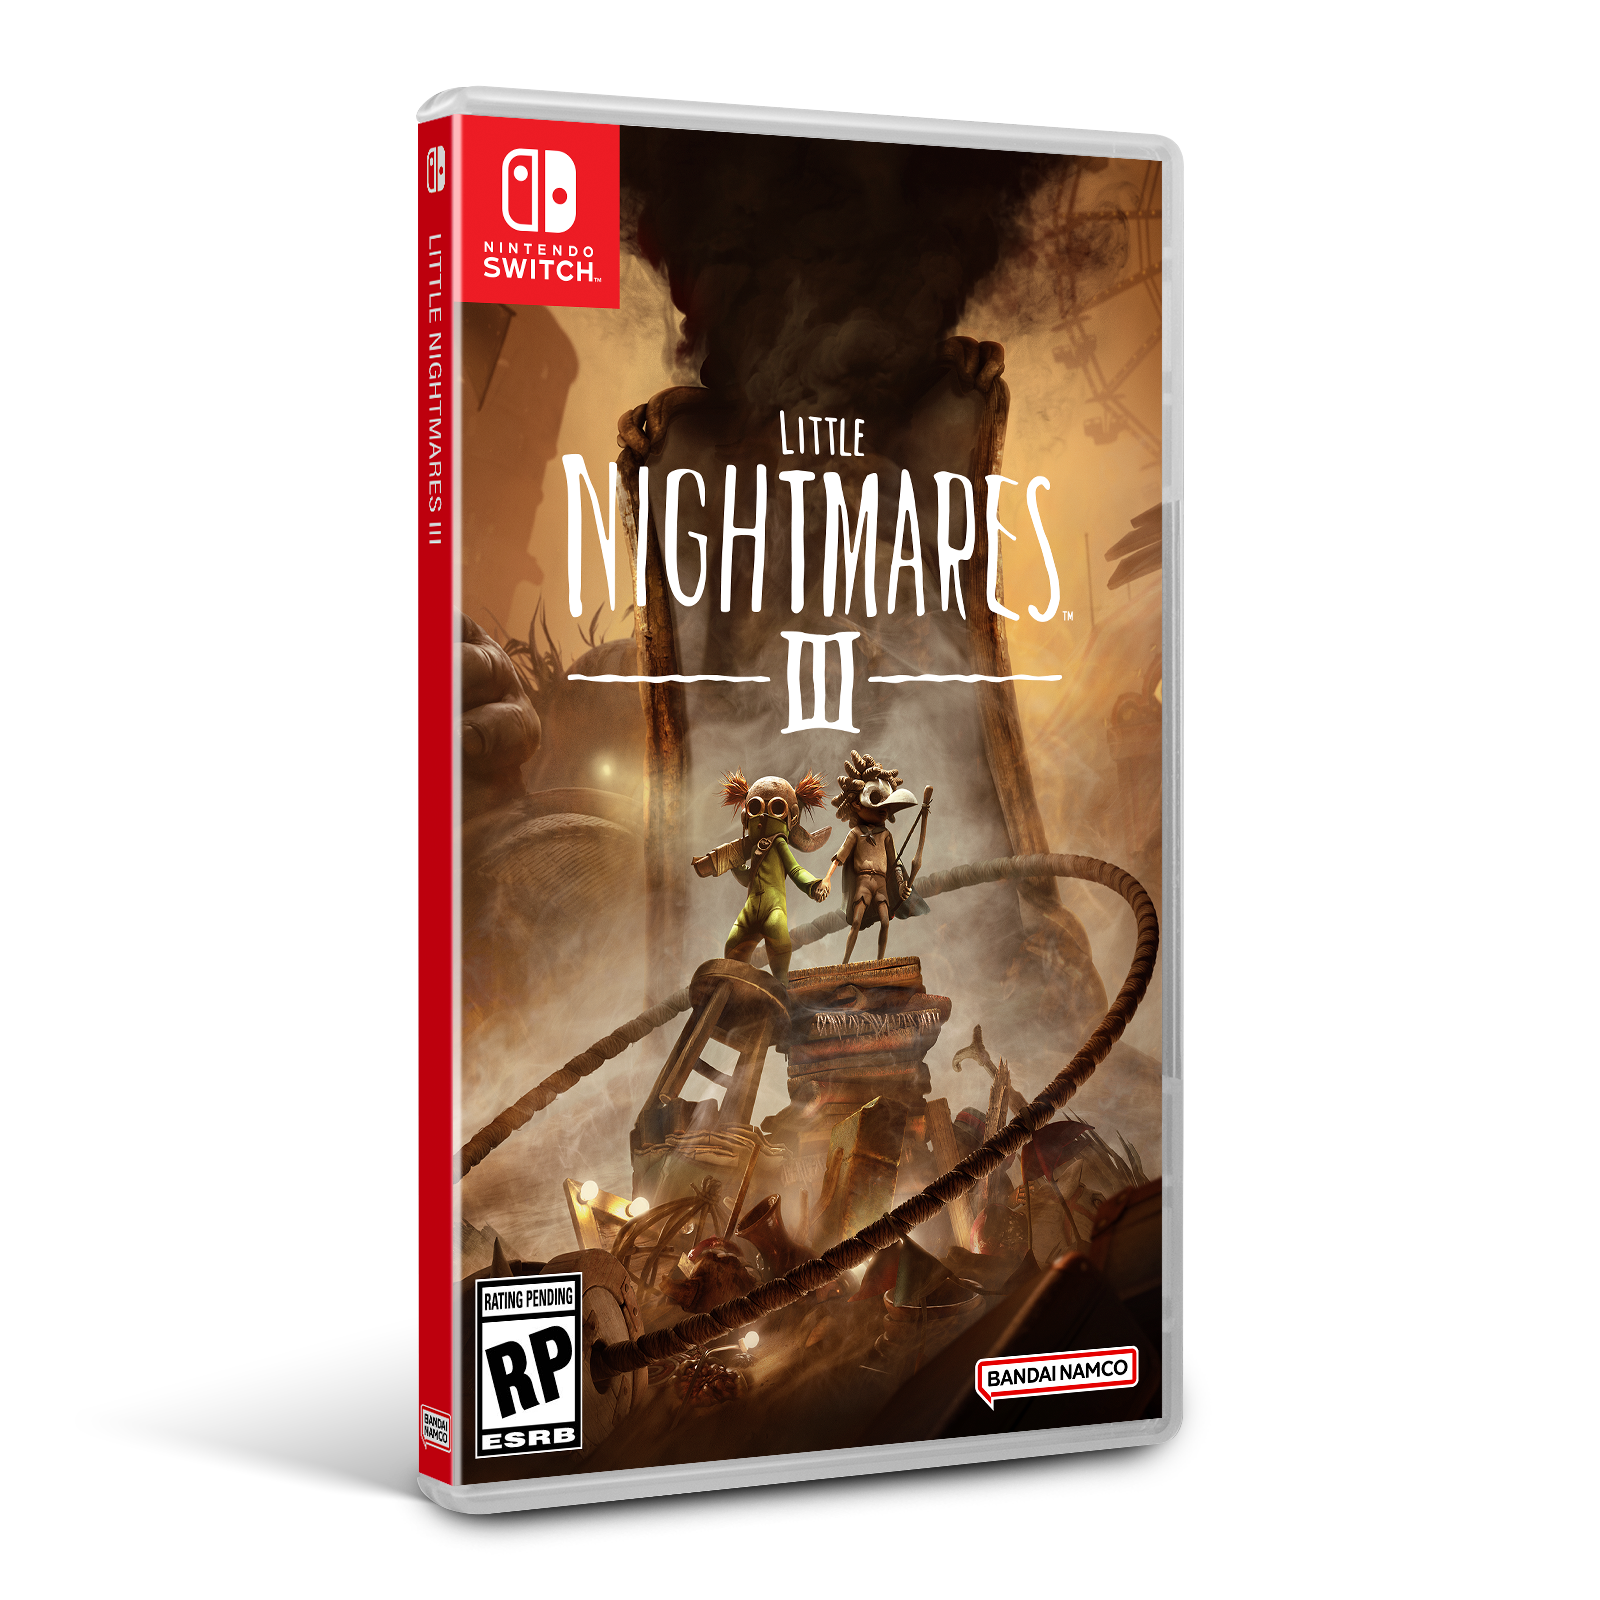 Little Nightmares III - Nintendo Switch, Nintendo Switch